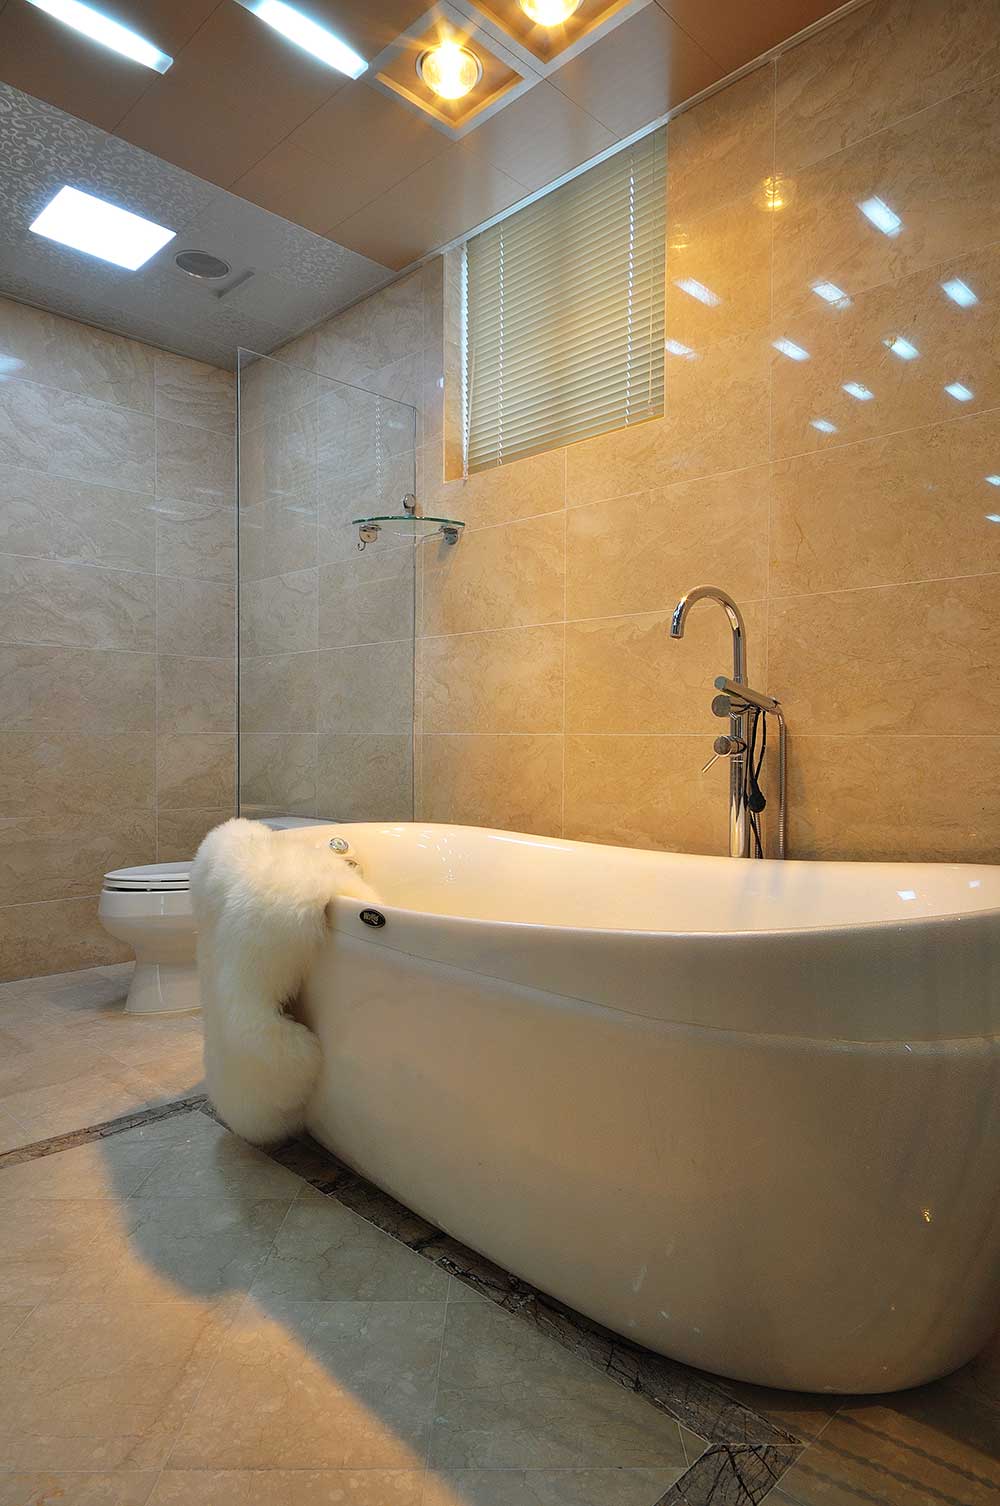 卫生间装修的简单一些，一个浴缸摆放在卫生间的中间，简约大方。整个卫生间吊顶的灯光也非常简约。